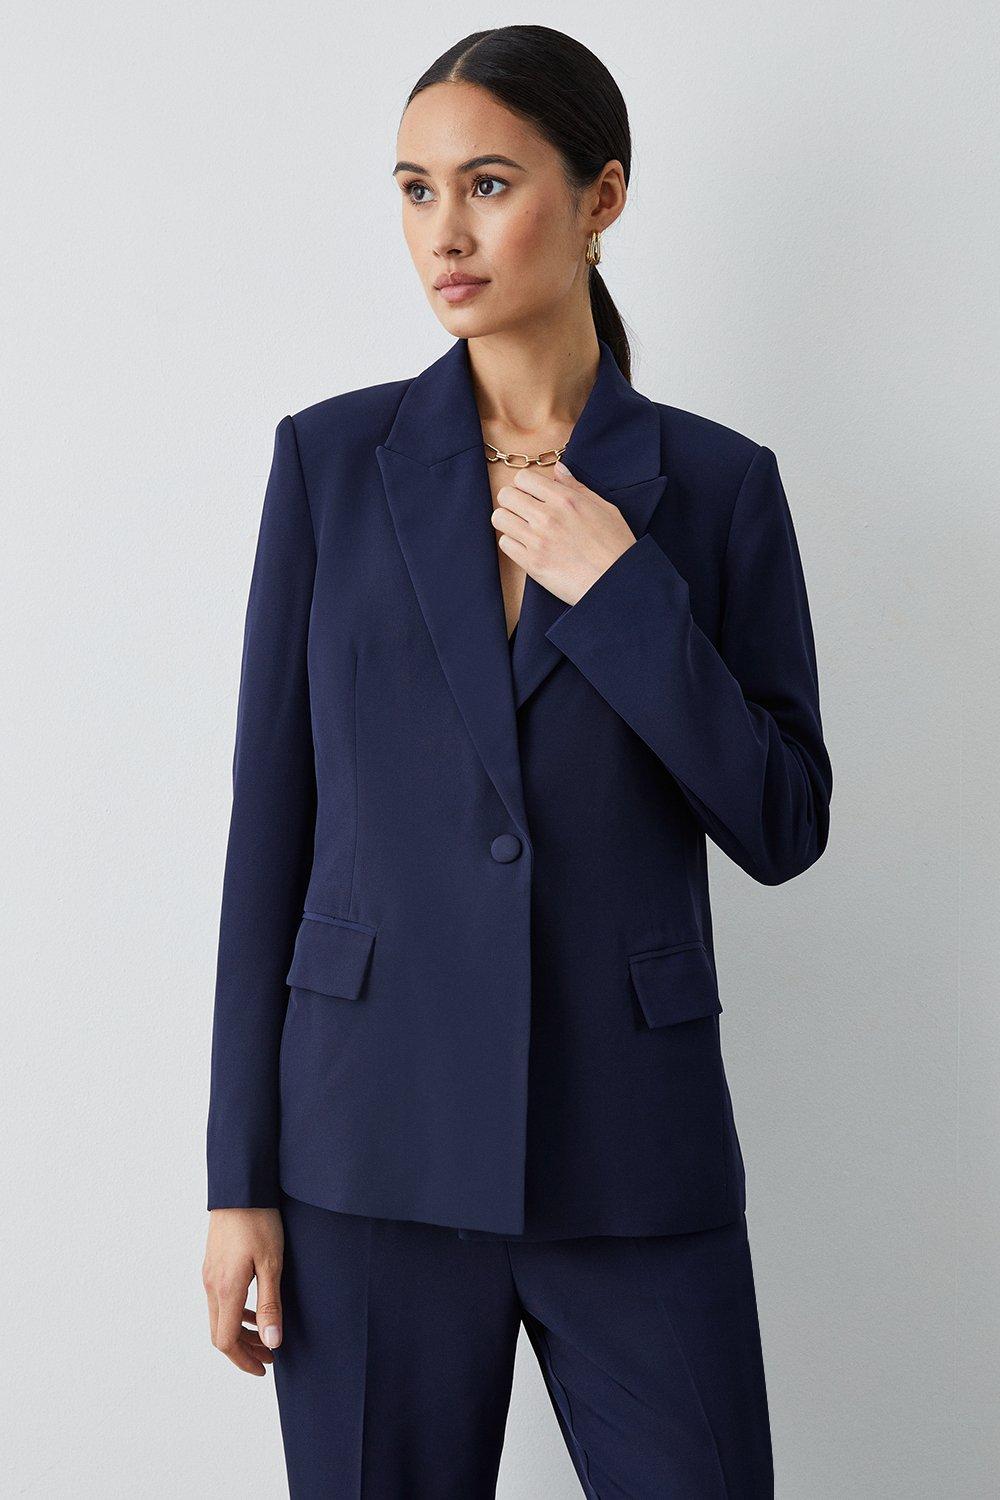 Jackets & Coats | Navy Single Breasted Blazer | Principles